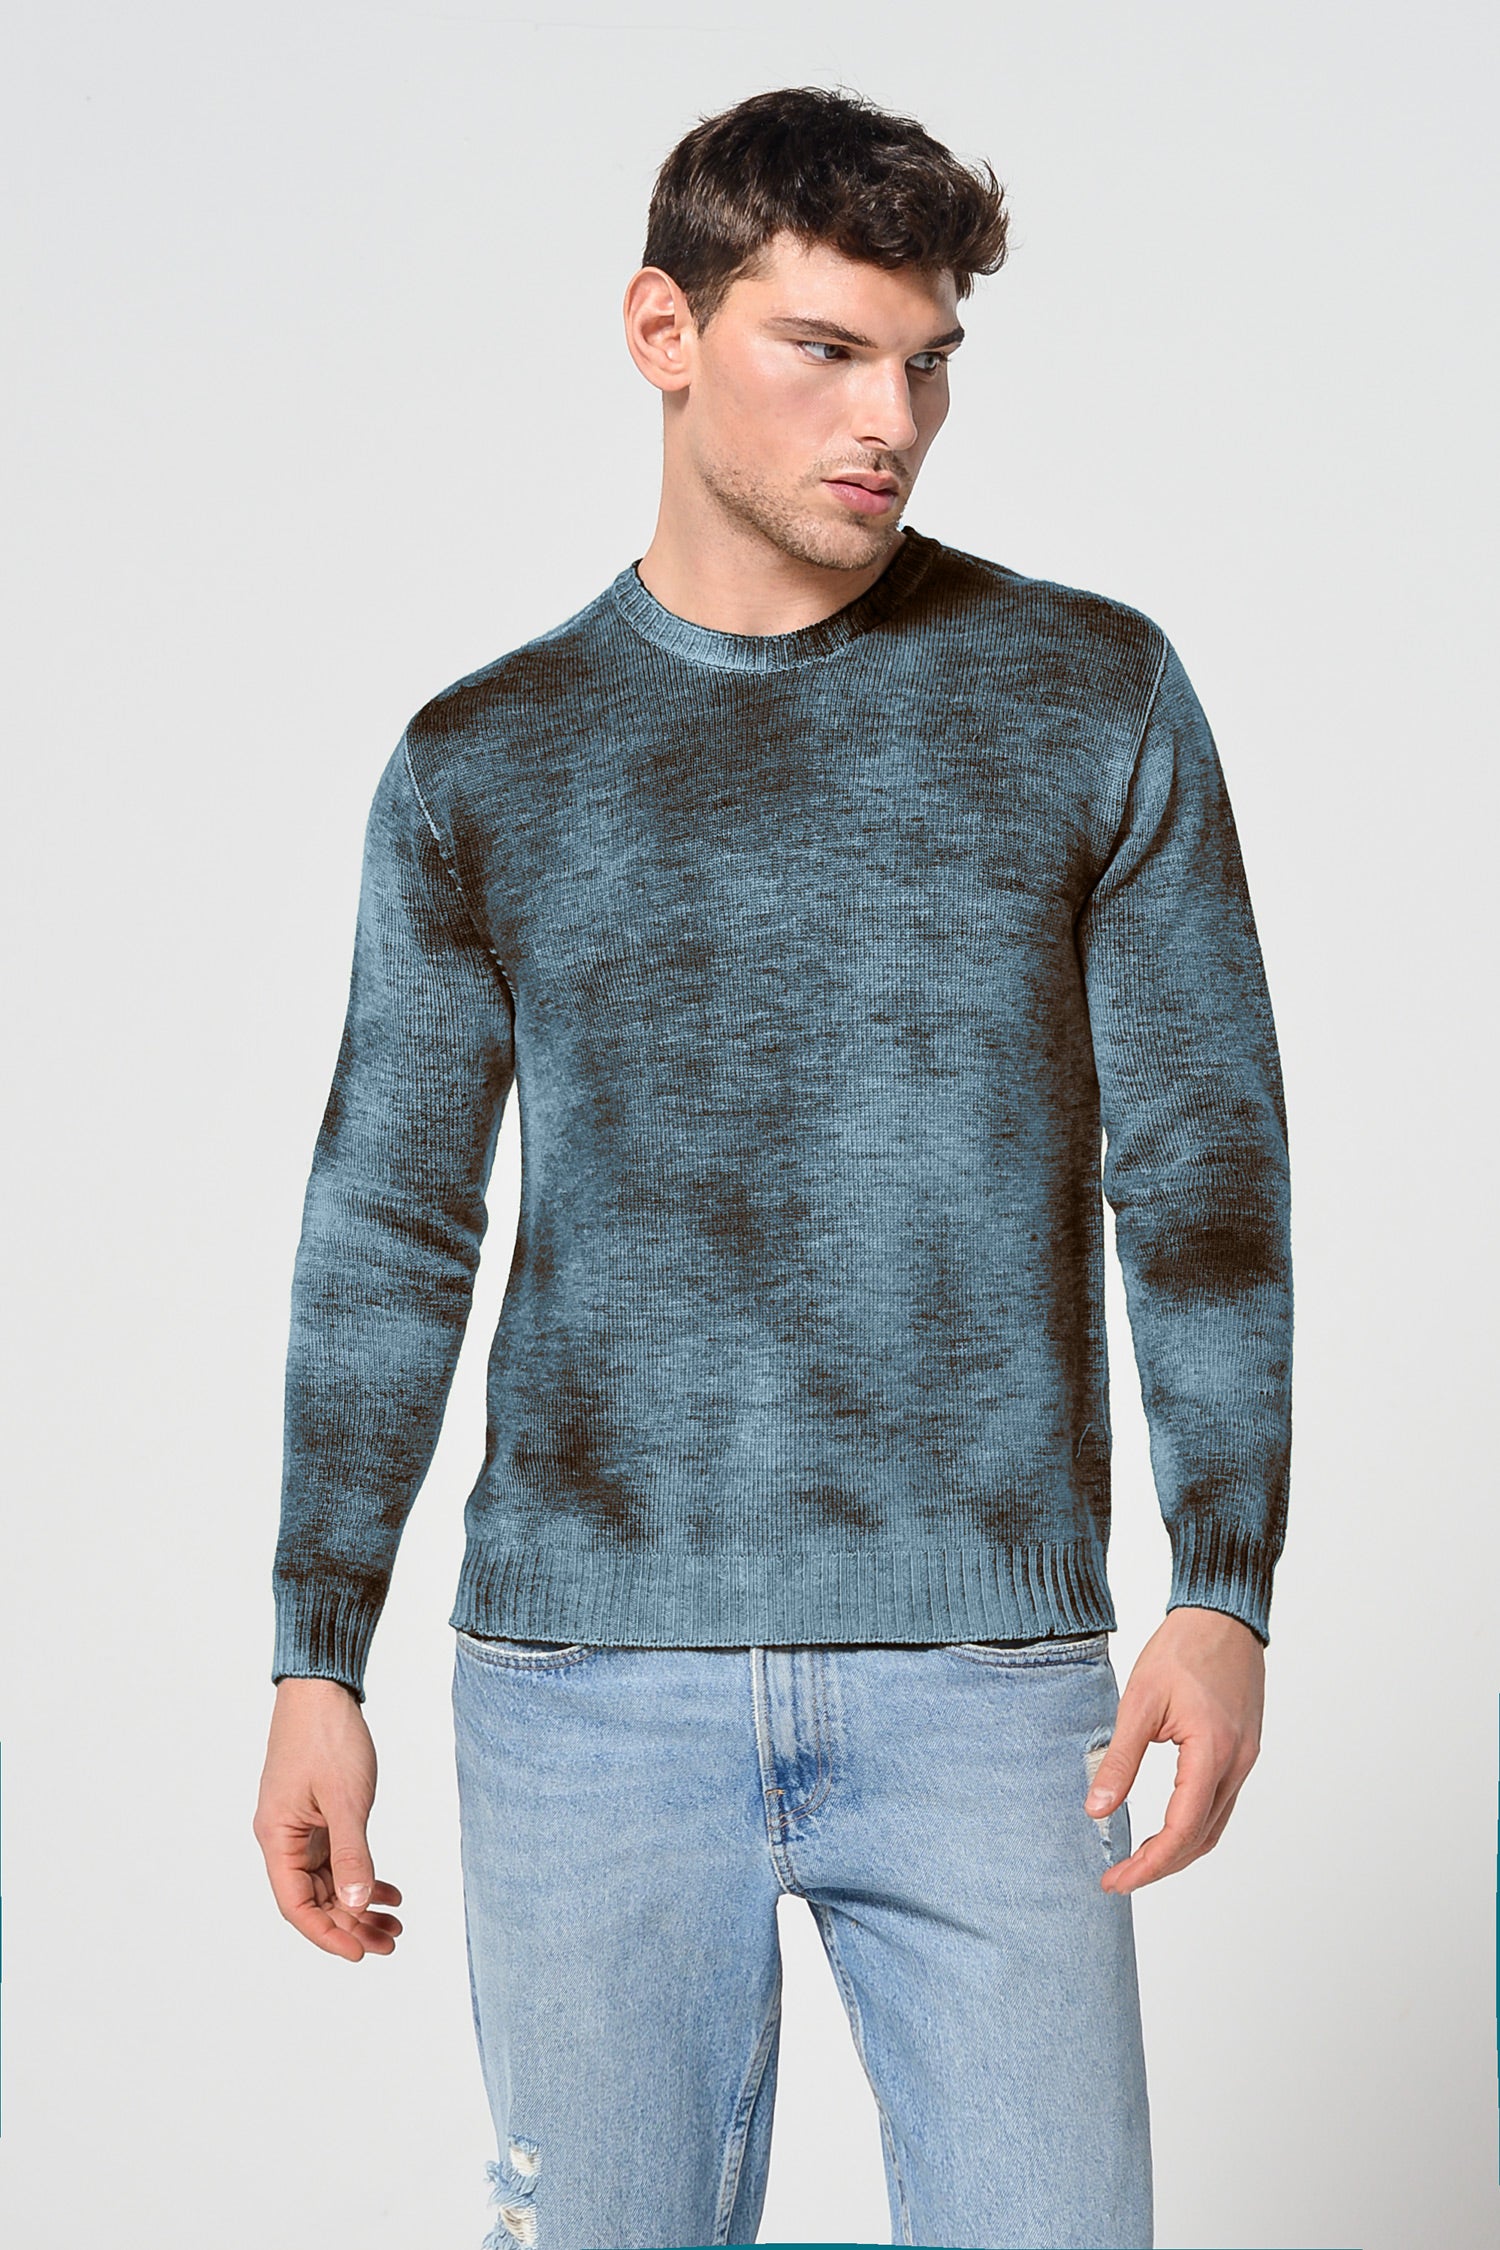 Cyr Rock Art Sweater - Gualco